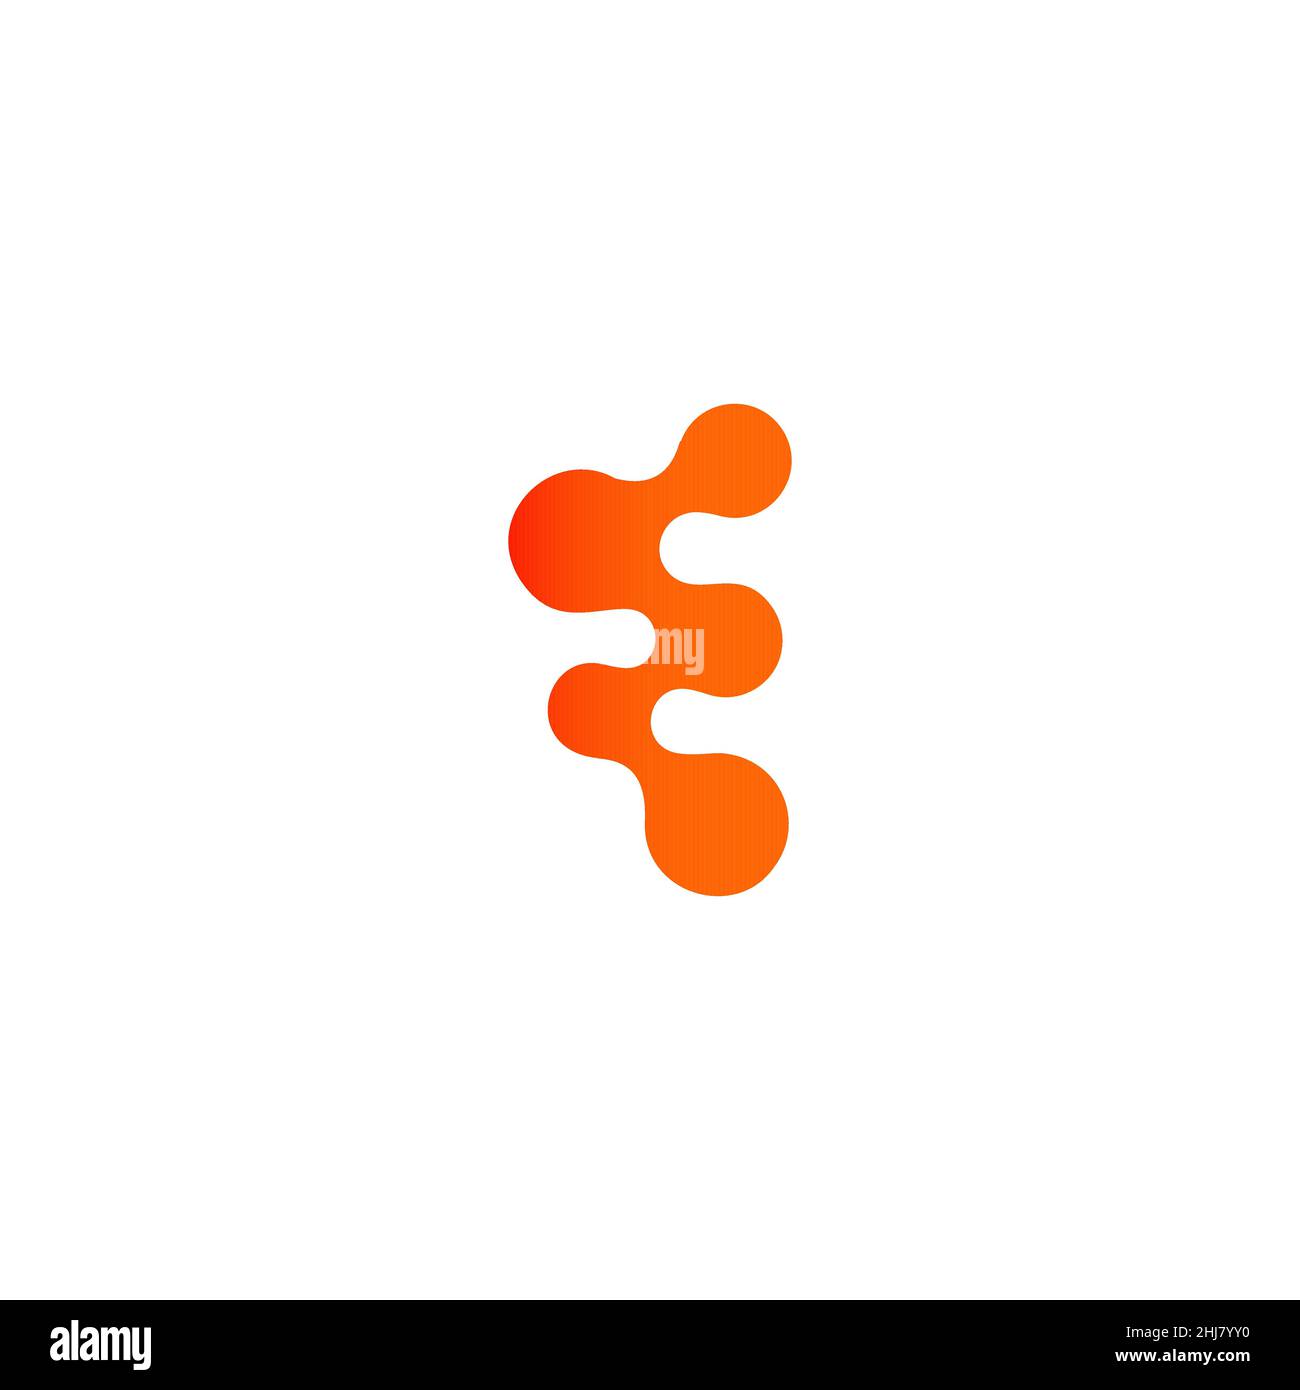 Science Day Symbol, Stammzellen abstraktes Zeichen, orange Fusion dots Logo Konzept, Atomenergie, Wirbelsäulengesundheit, DNA-Symbol, Nanotech Research Technology Lab Stock Vektor